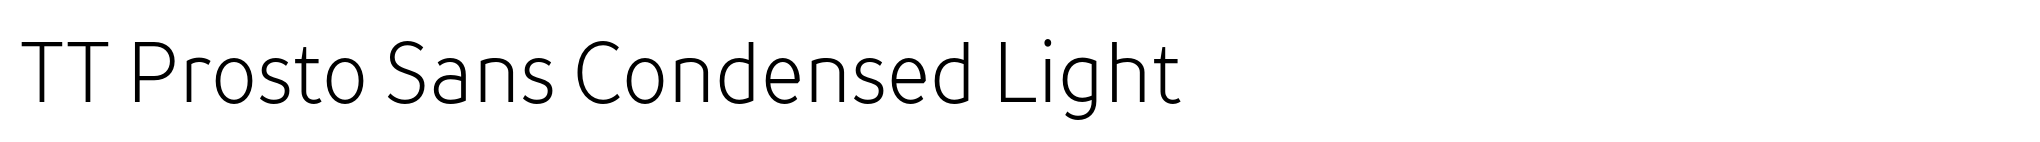 TT Prosto Sans Condensed Light image